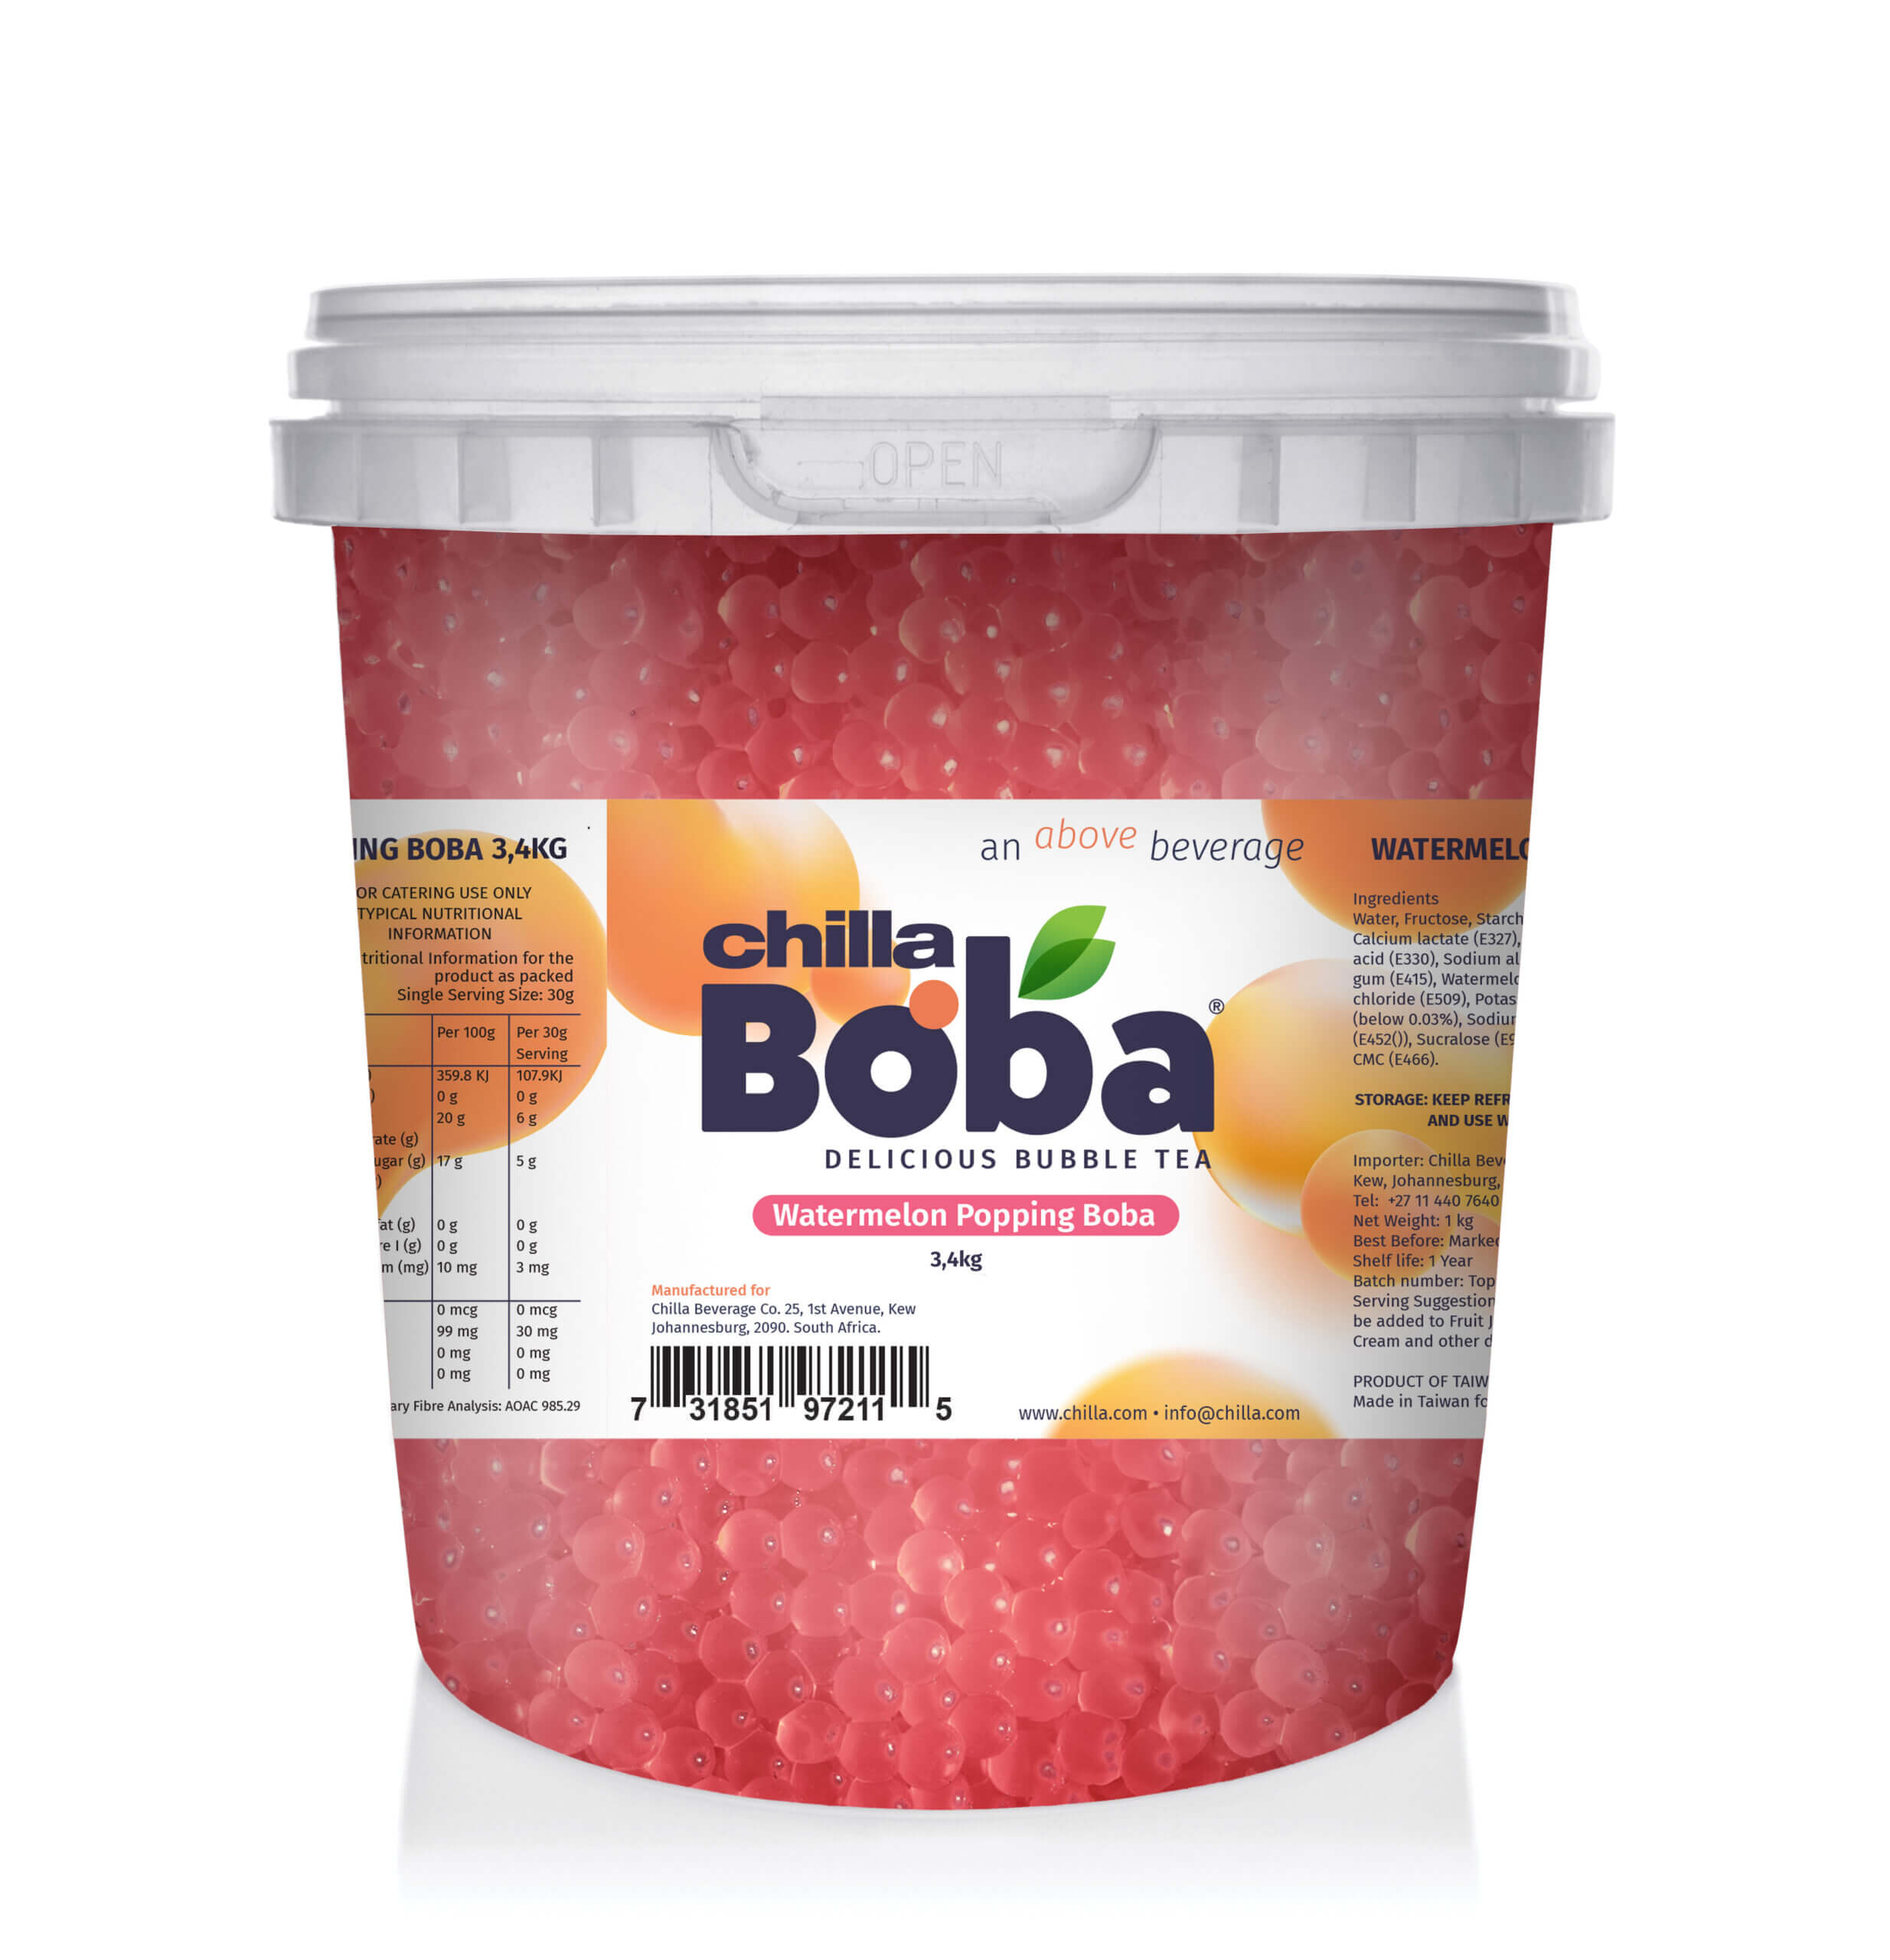 Watermelon Popping Boba 3.4kg | Not Kosher